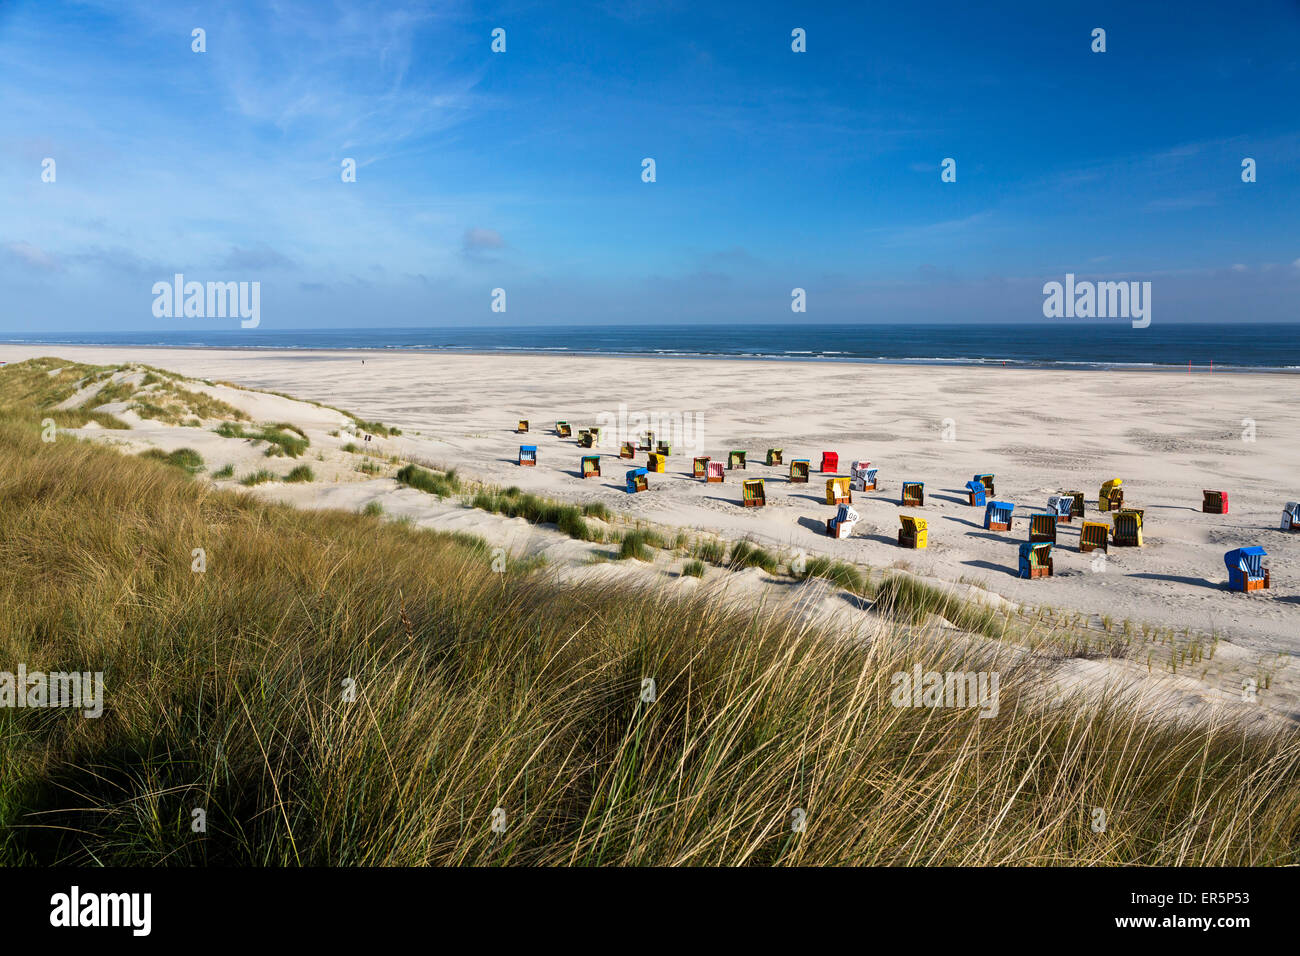 Sedie a sdraio in spiaggia, Juist isola, mare del Nord est delle Isole Frisone, Frisia orientale, Bassa Sassonia, Germania, Europa Foto Stock